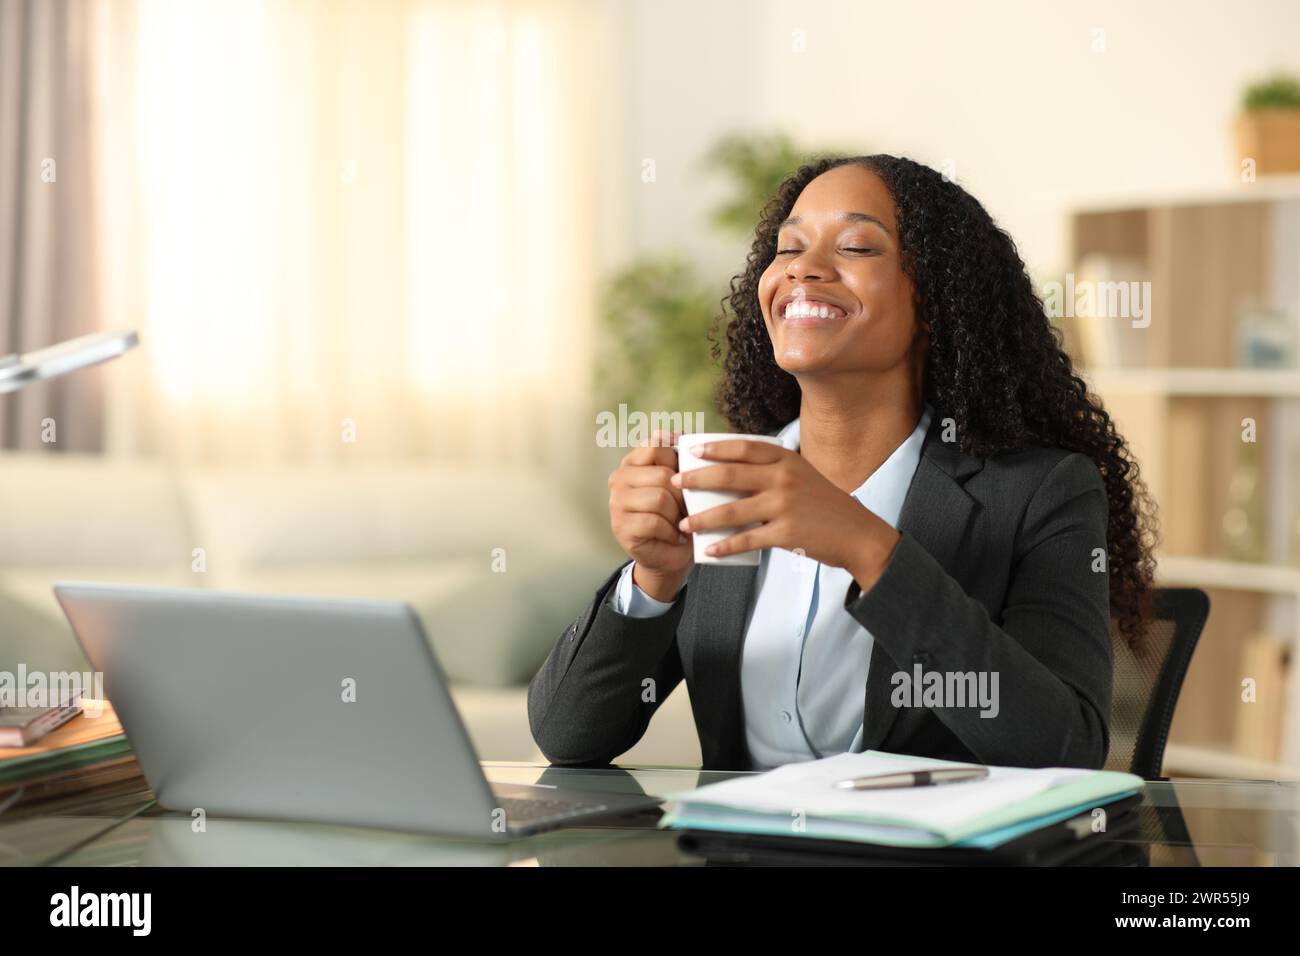 Glücklicher schwarzer Tele-Mitarbeiter, der Kaffee oder Tee trinkt und zu Hause entspannt atmet Stockfoto